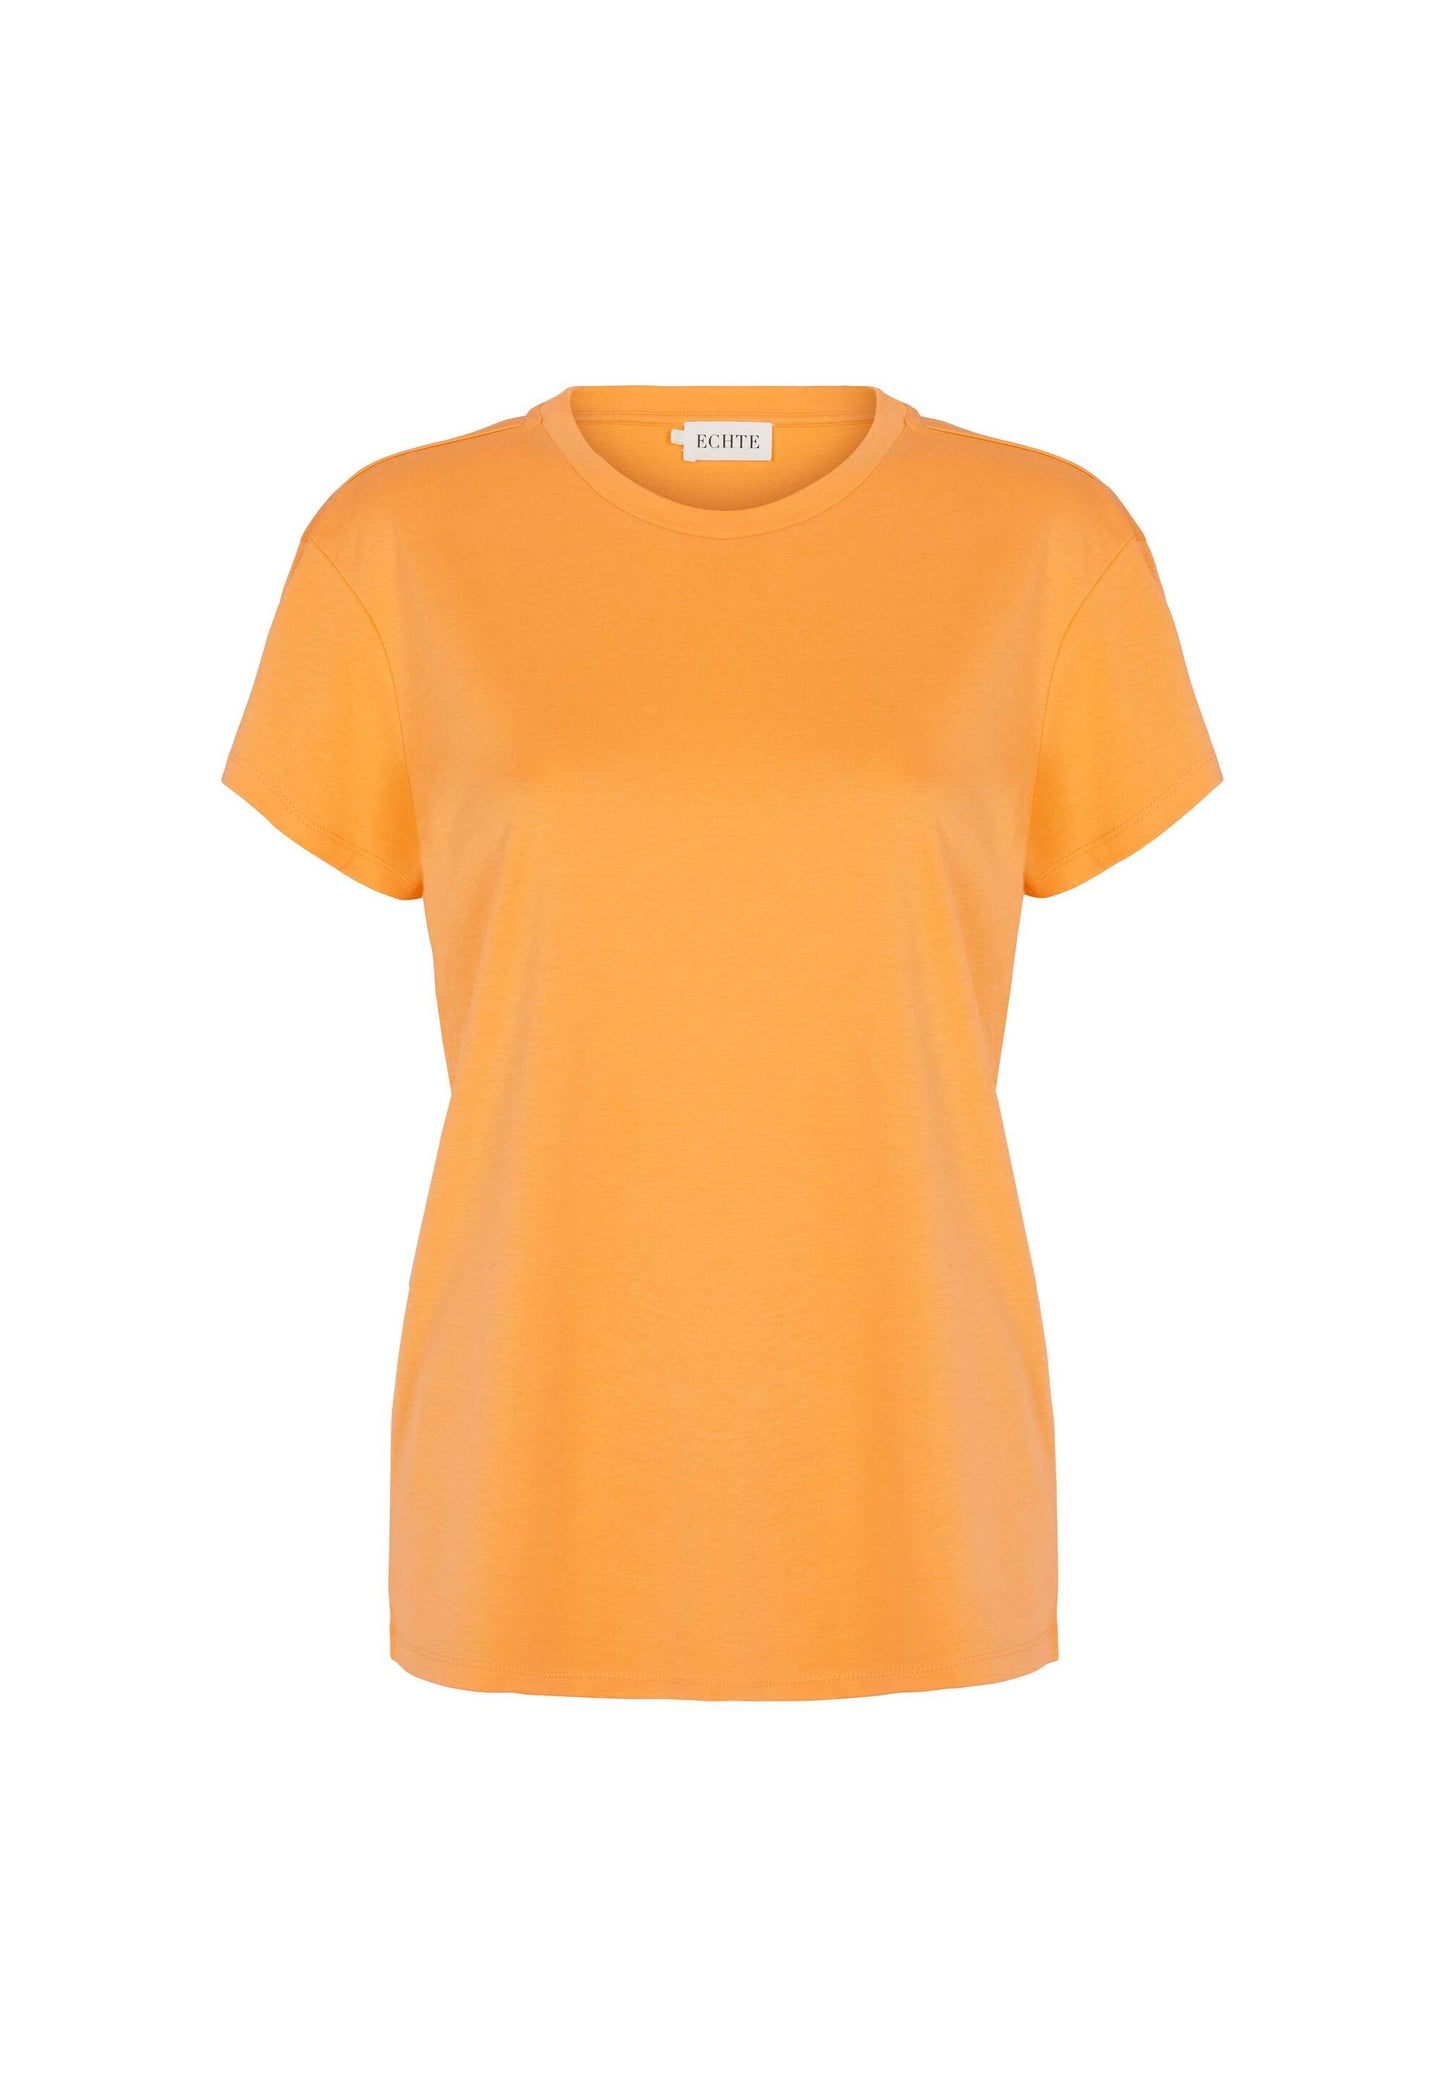 ECHTE SS T-shirt, T-shirts T-Shirts 01633 Cantaloupe